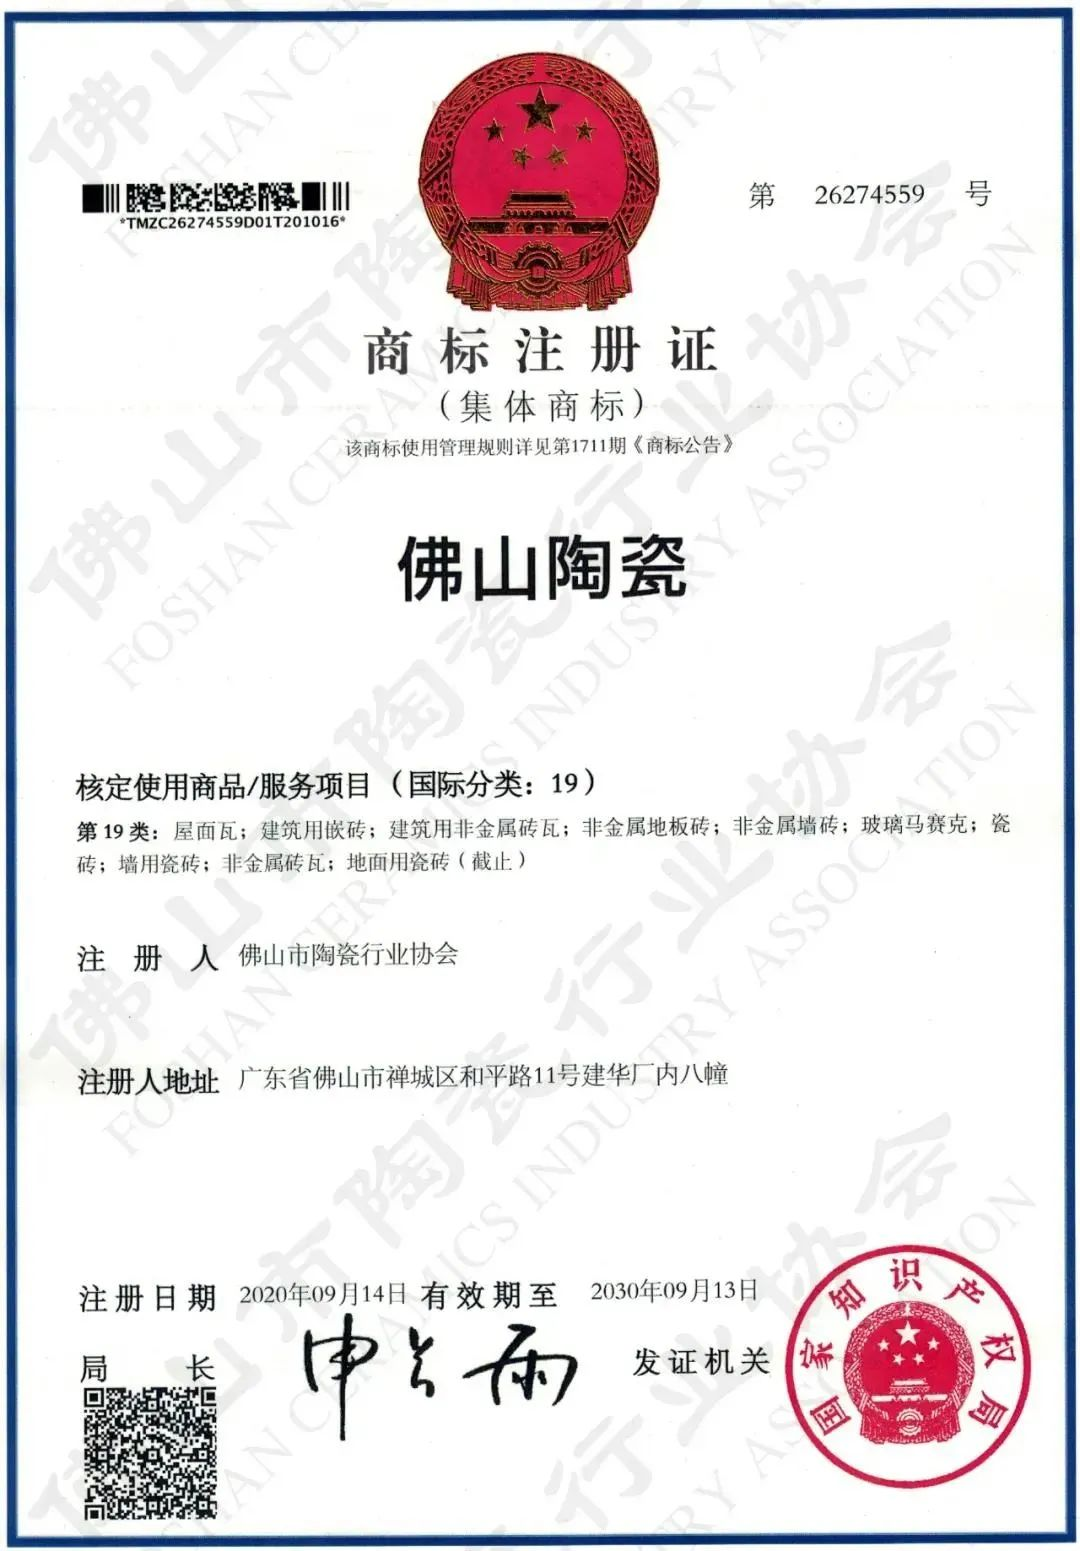 权威认证，品质保障 | 米乐m6
上榜首批“佛山陶瓷”集体商标授权品牌(图4)